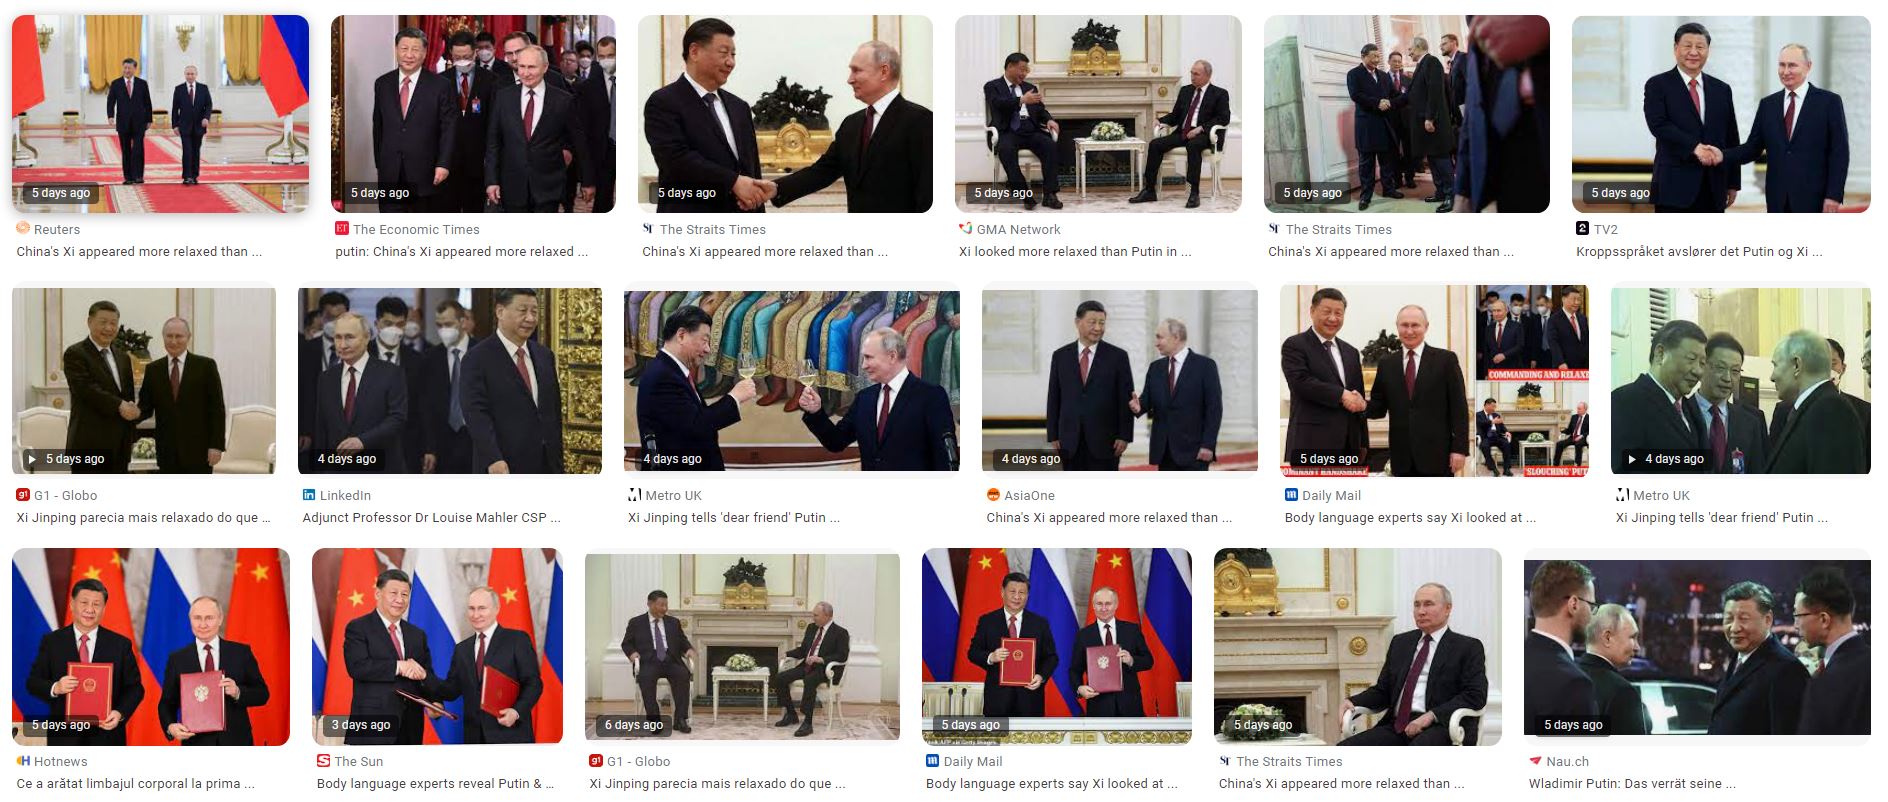 Xi Jin Ping and Putin in Moskow